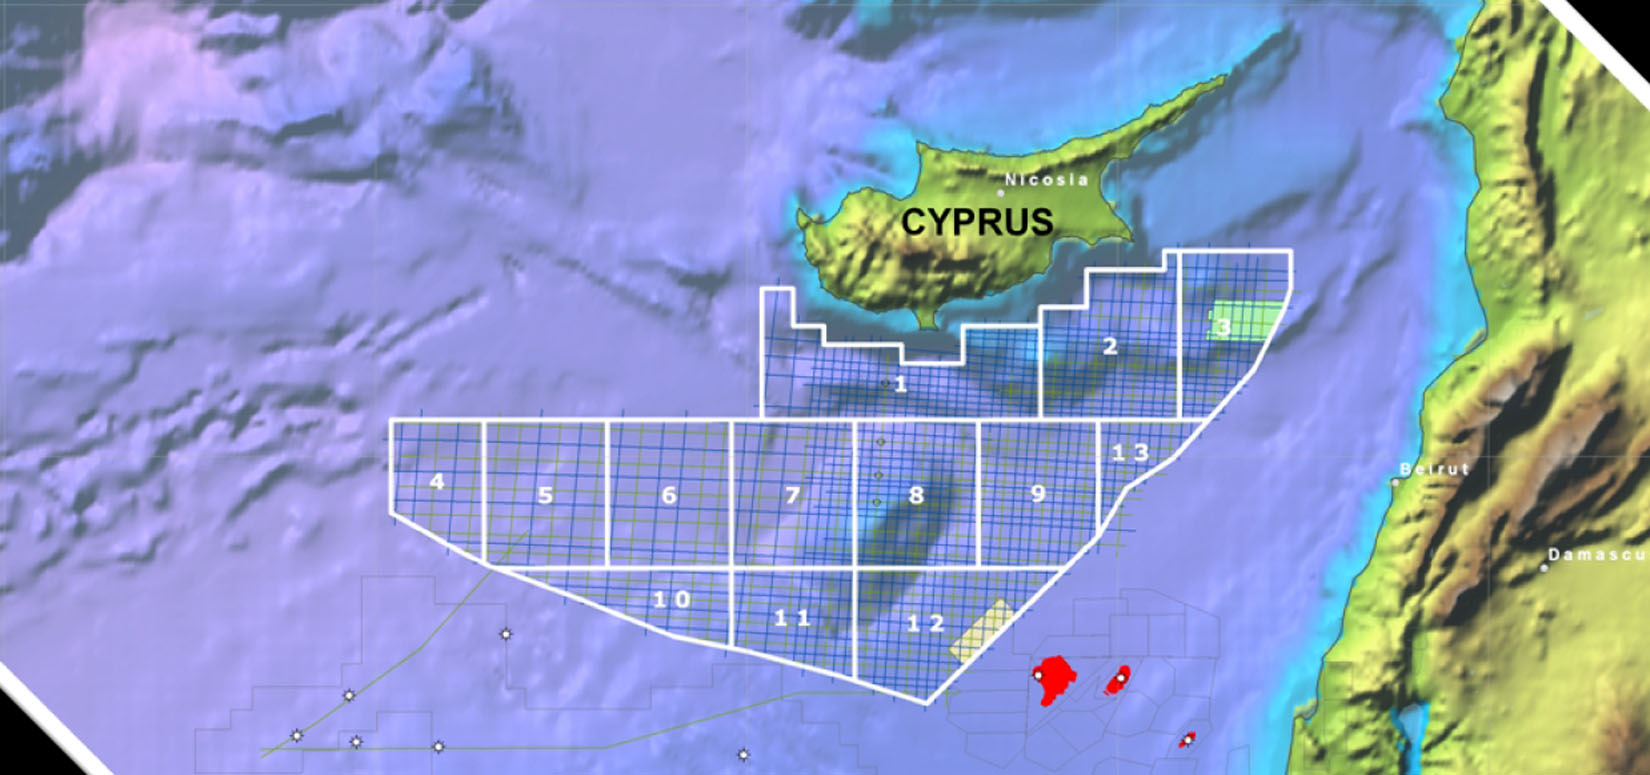 Σε 100 δισ. δολάρια υπολογίζει την αξία φυσικου αερίου η Κύπρος